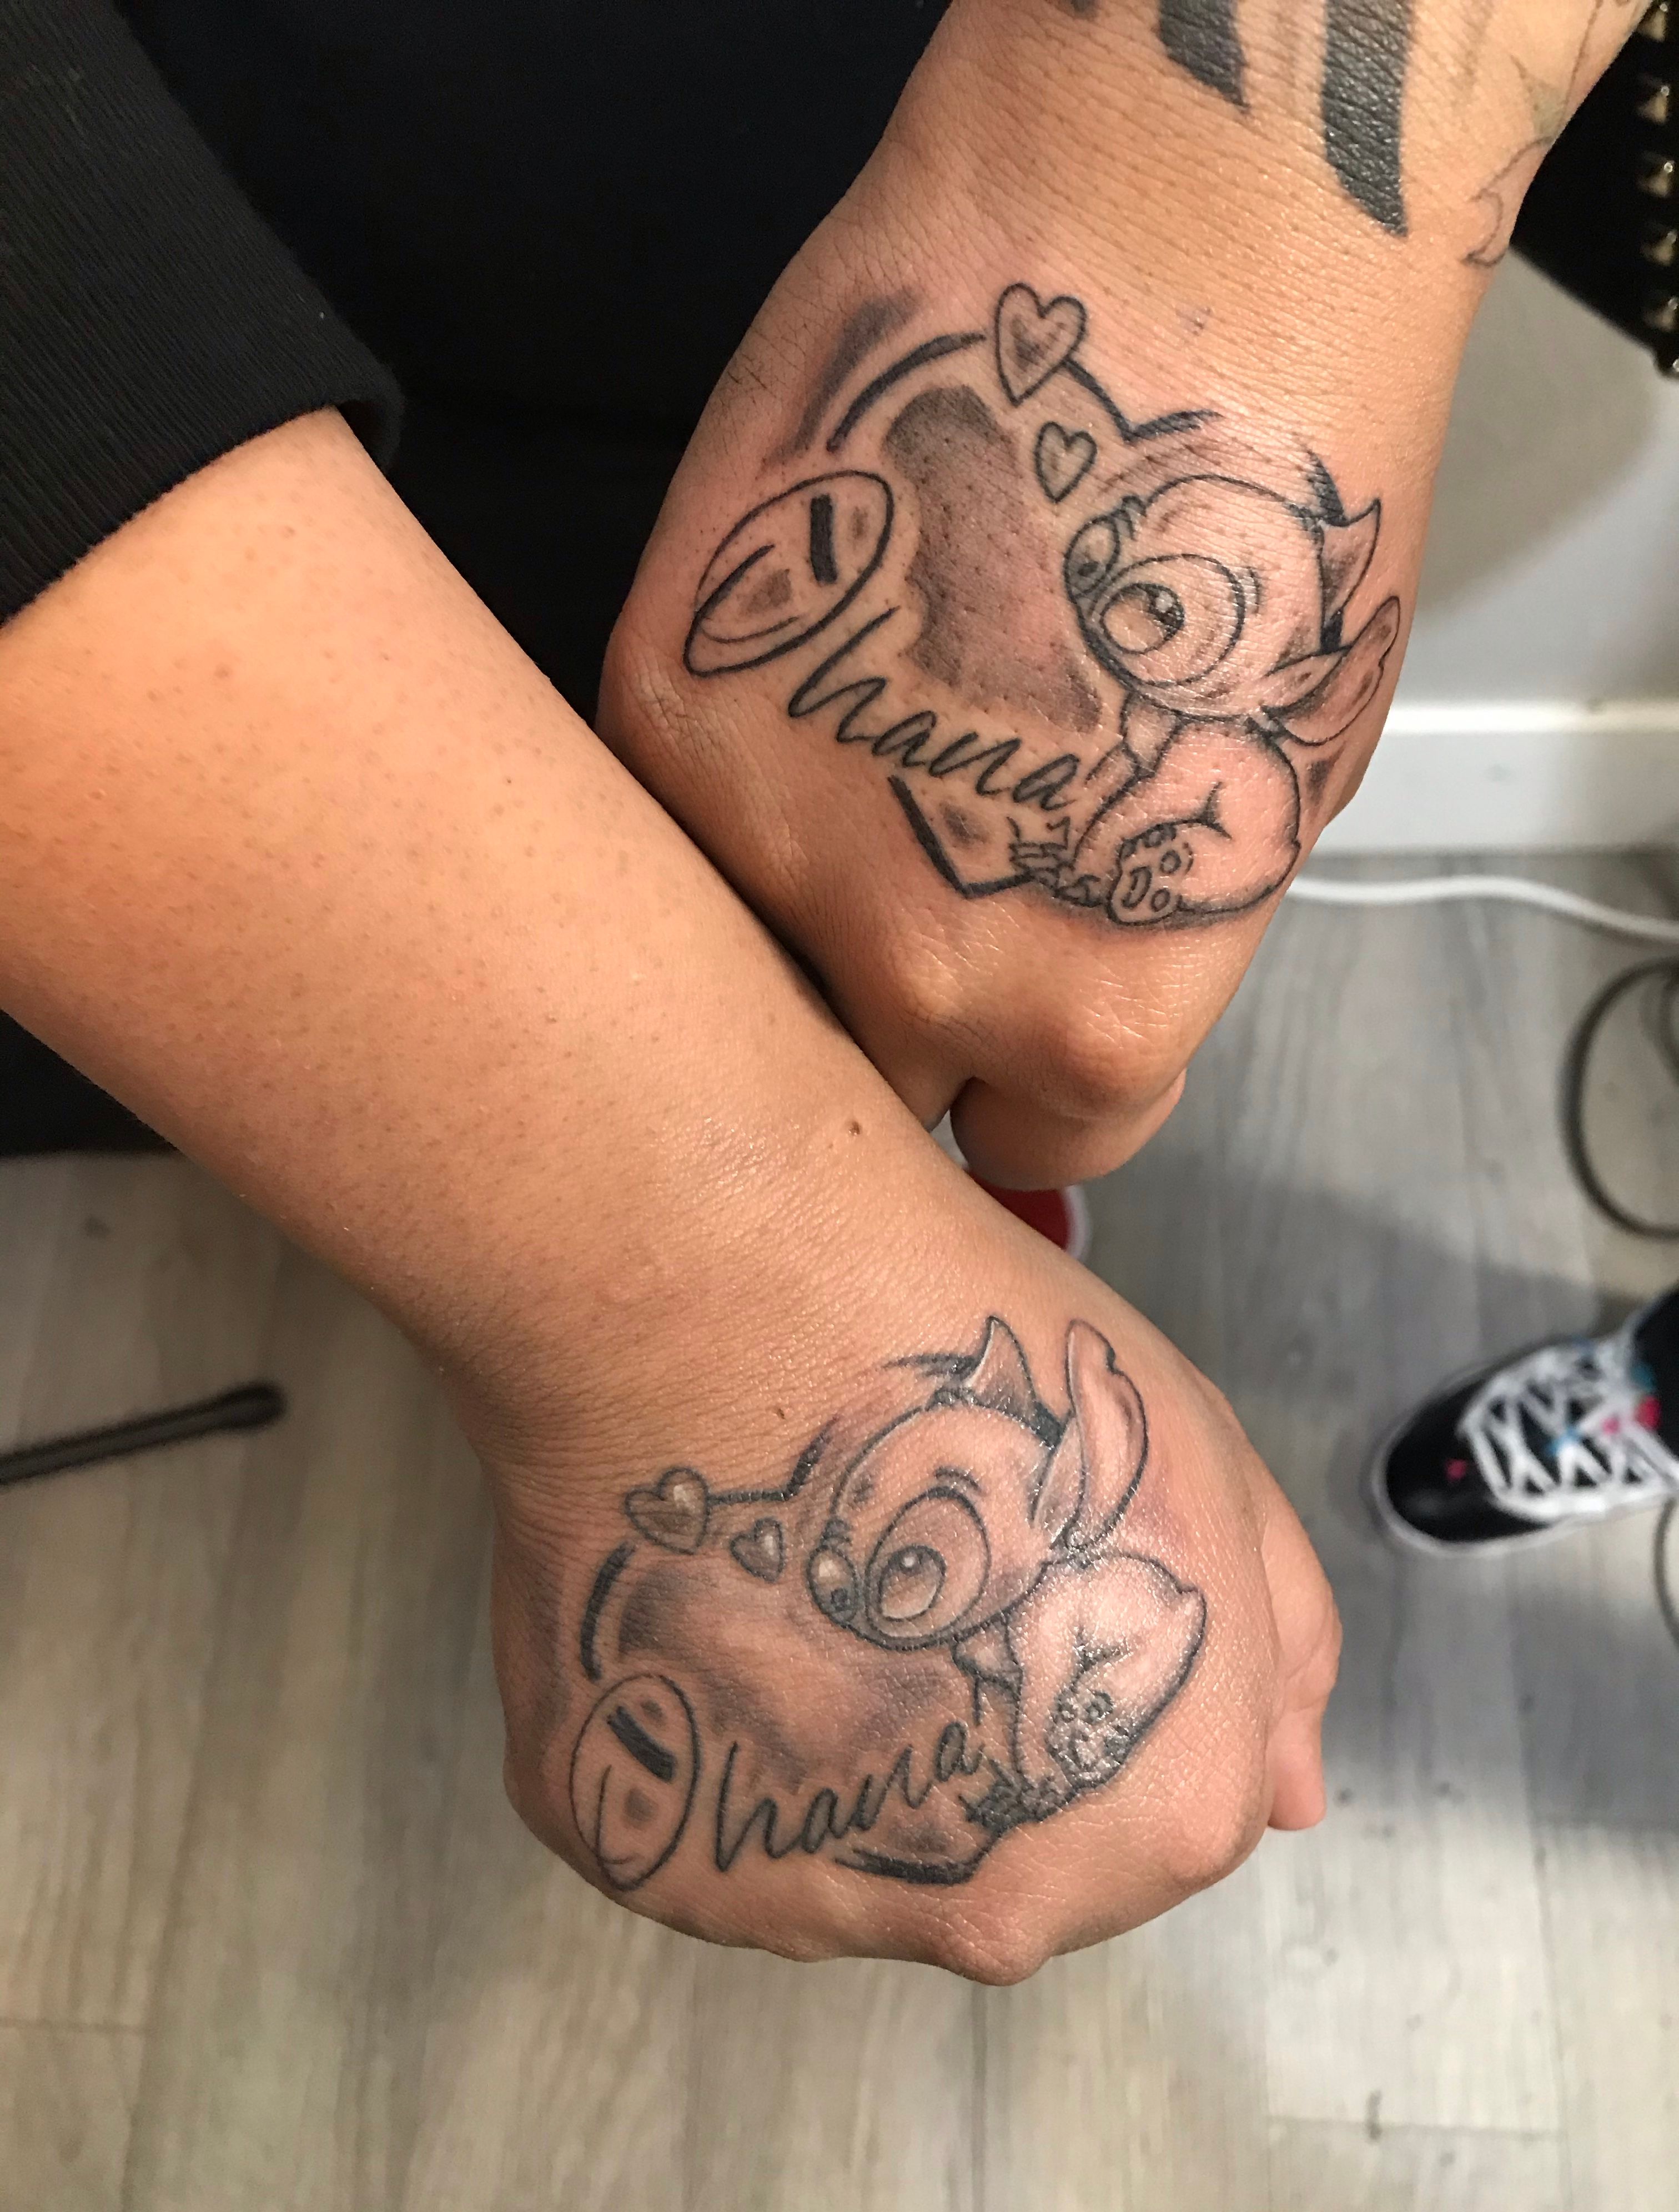 TATTOOS IDEAS  INSPIRATION  Disney stitch tattoo Cartoon tattoos Disney  tattoos